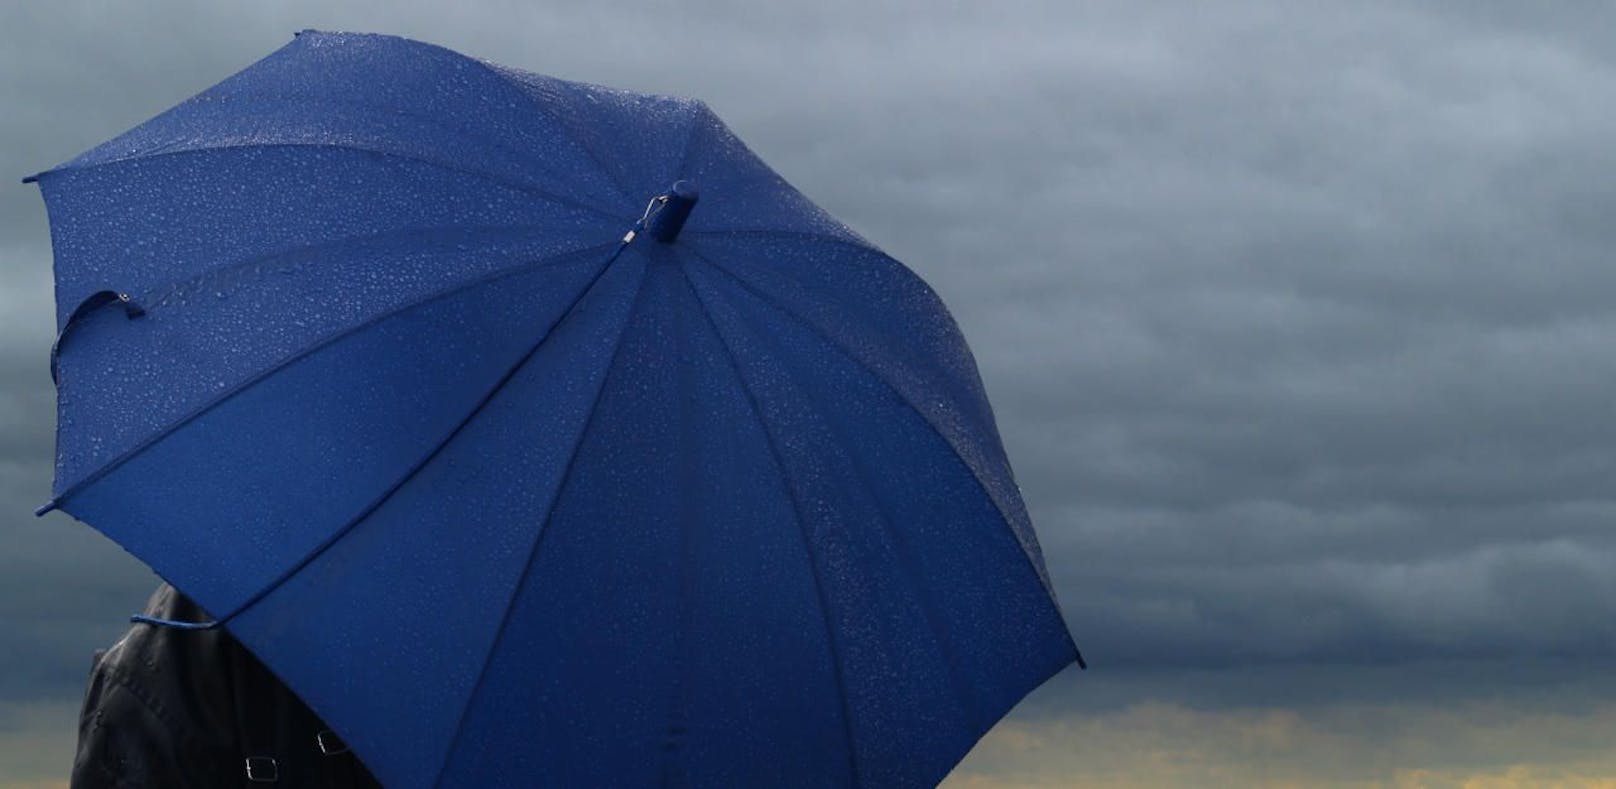 Nach dem Pfingstwochenende müssen in ganz Österreich wieder die Regenschirme ausgepackt werden.